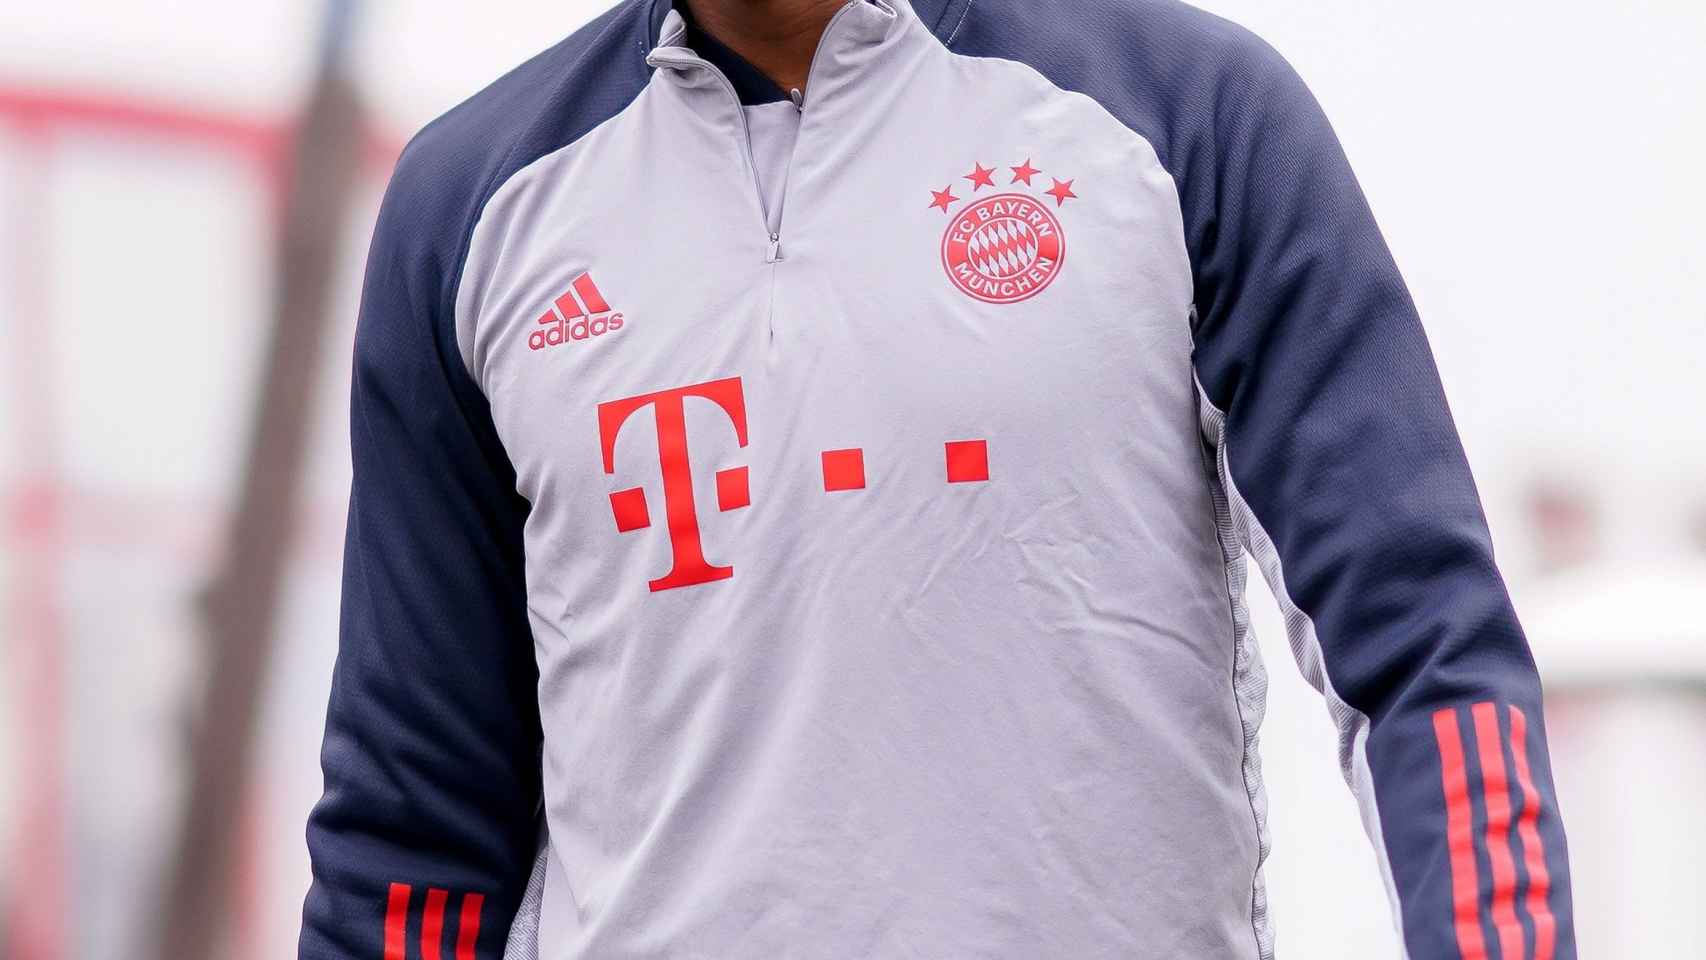 Alaba durante un entrenamiento del Bayern